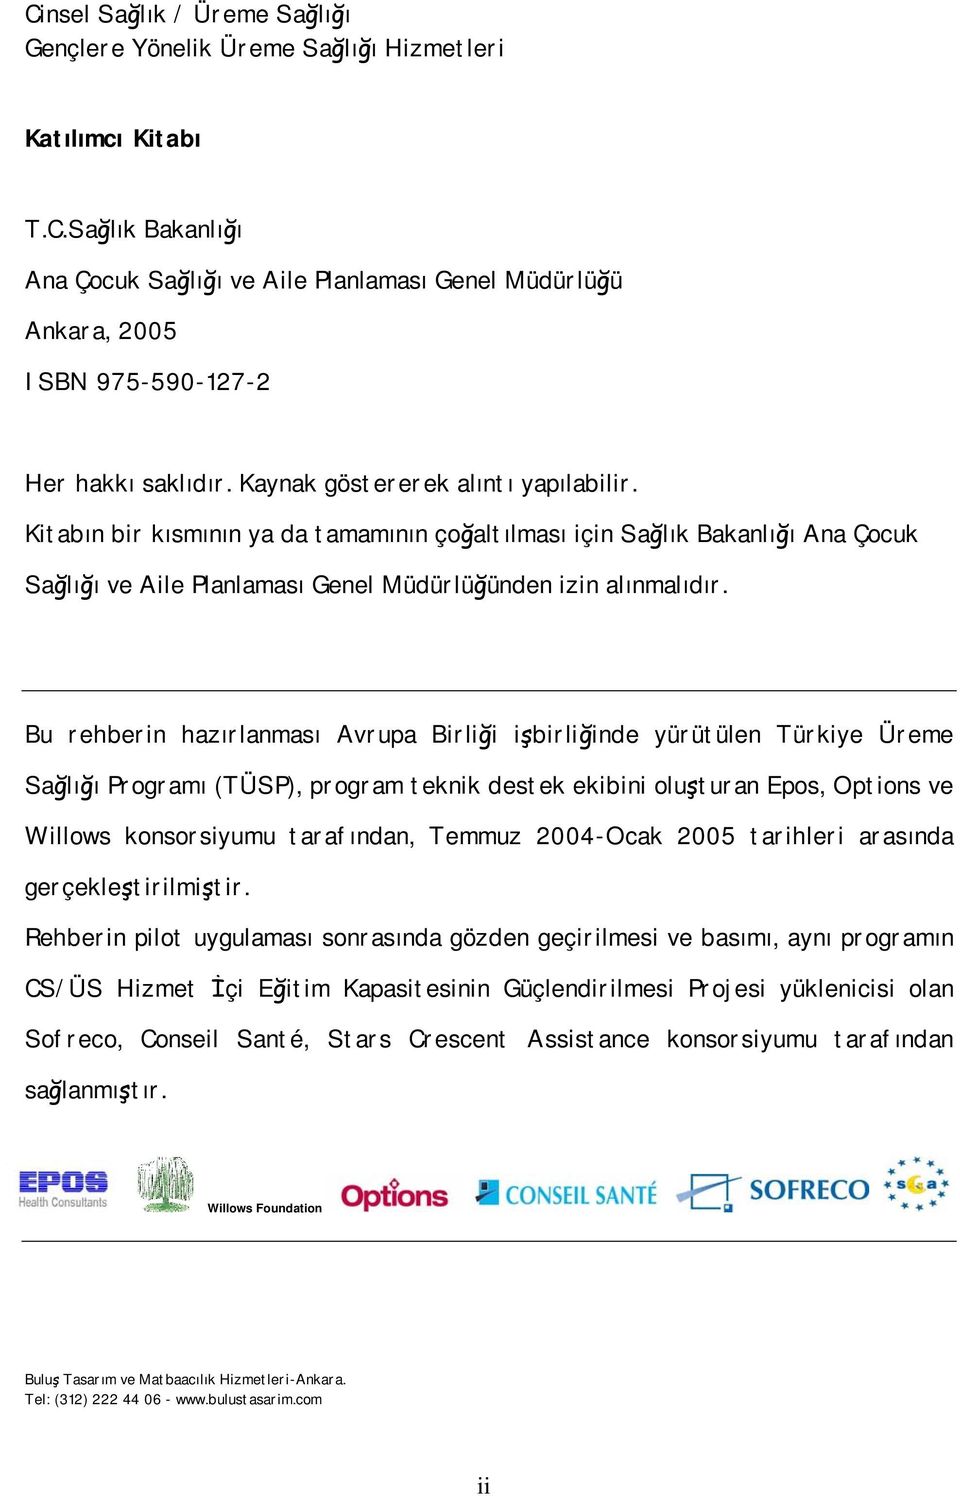 Bu rehberin hazırlanması Avrupa Birliği işbirliğinde yürütülen Türkiye Üreme Sağlığı Programı (TÜSP), program teknik destek ekibini oluşturan Epos, Options ve Willows konsorsiyumu tarafından, Temmuz